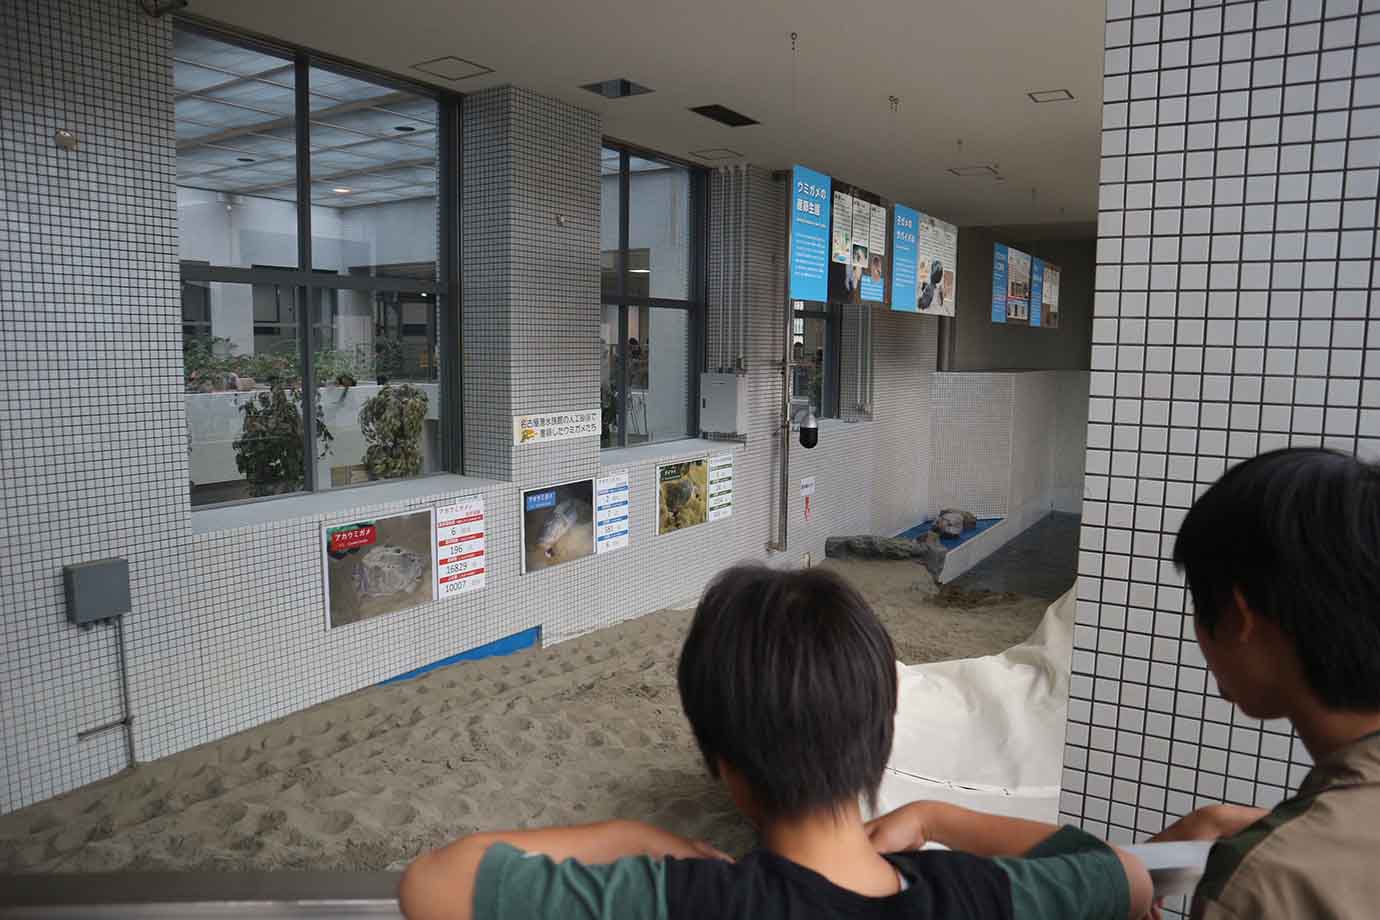 ウミガメが上陸するための人工砂浜や、名古屋港水族館でふ化した子ガメも。生態を体感できる素敵な展示です。